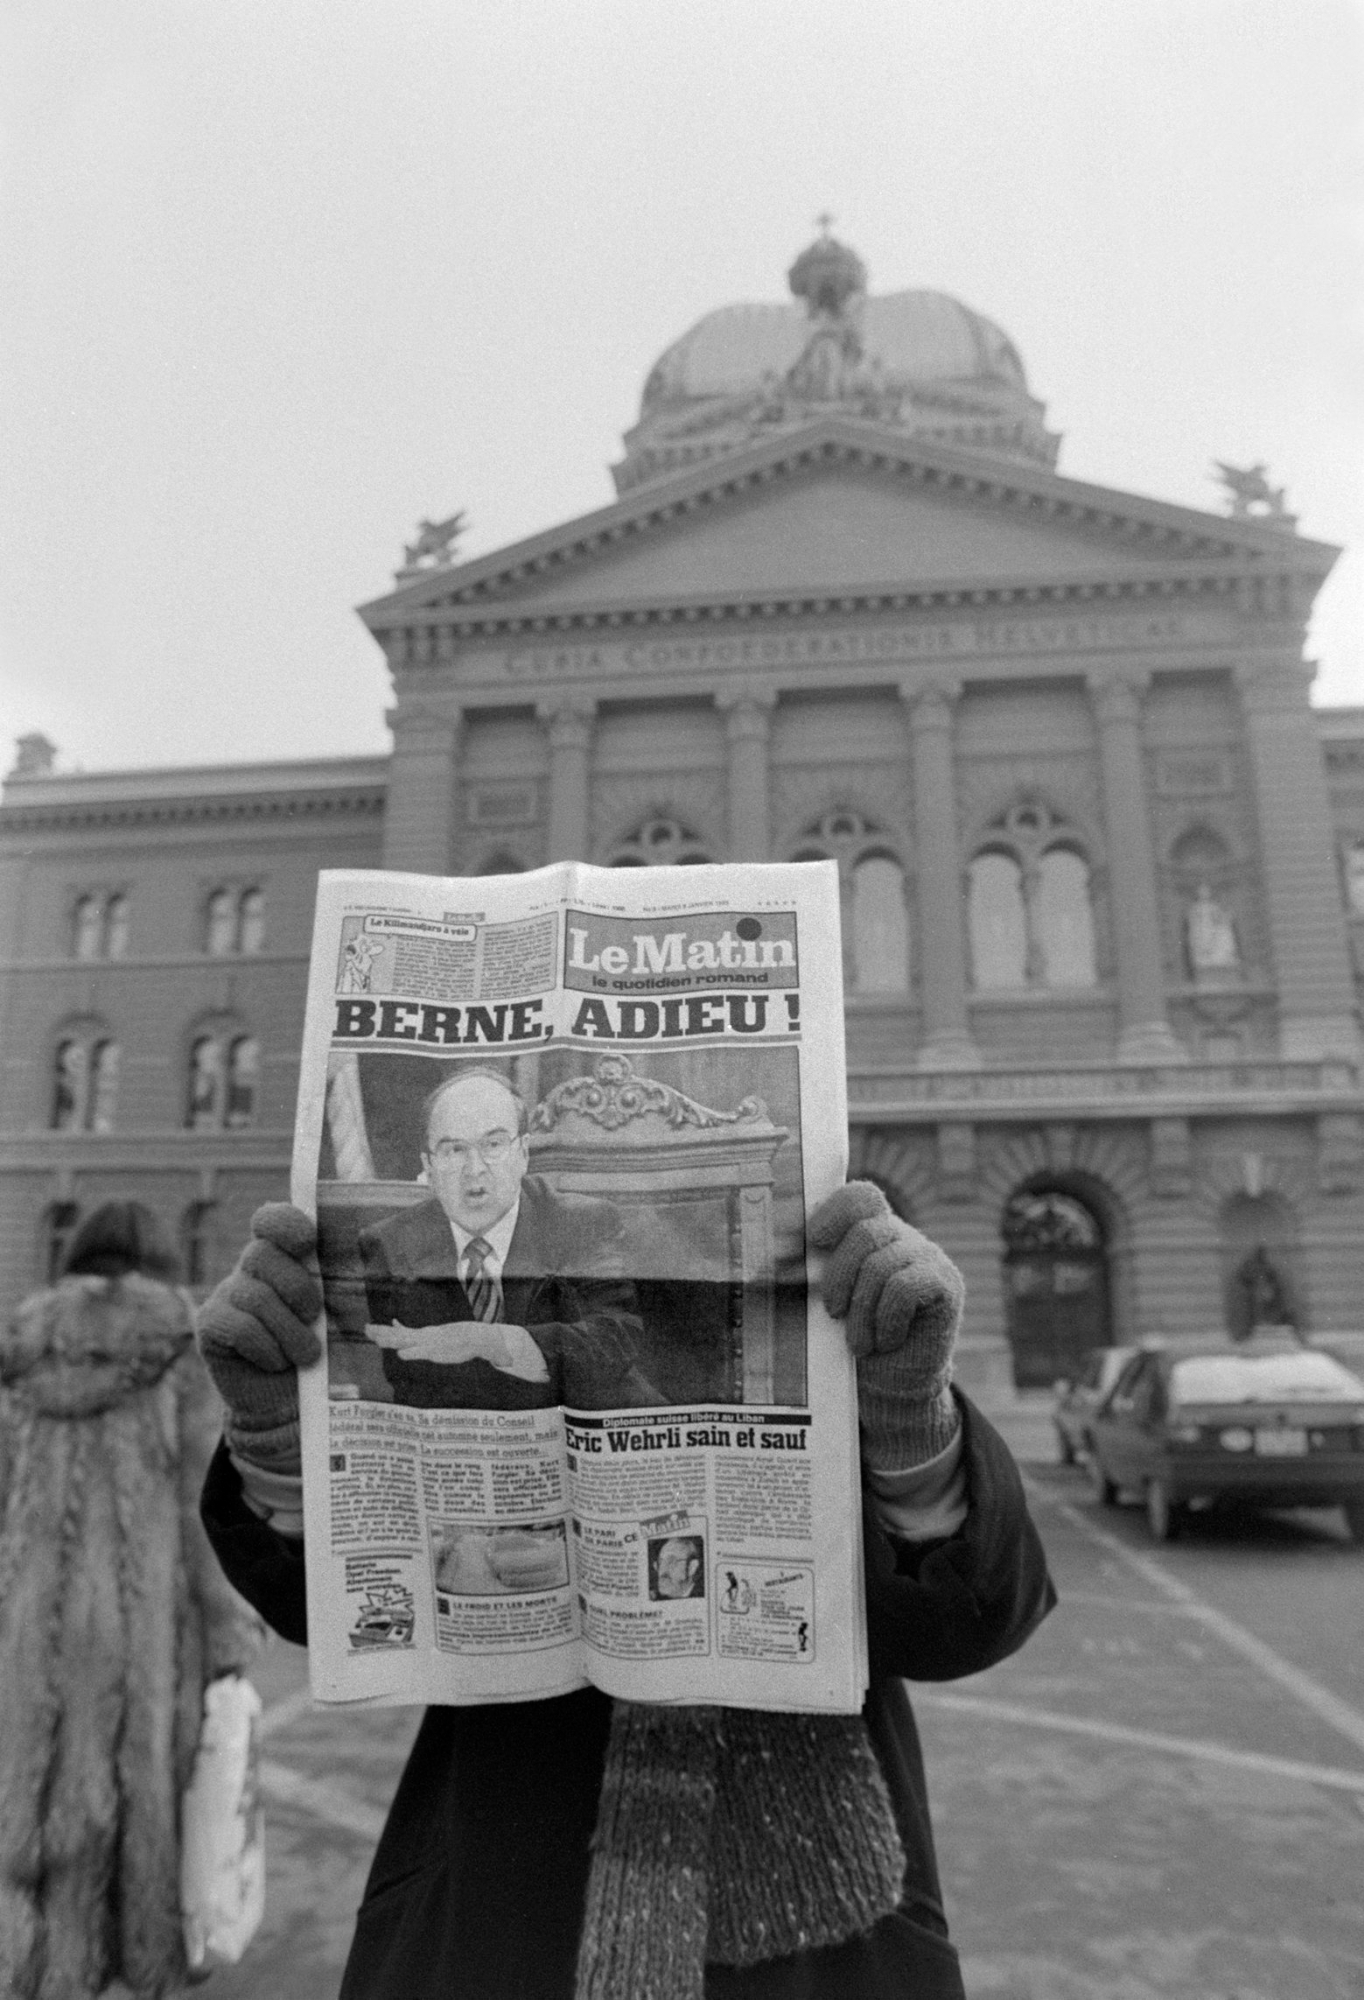 THEMENBILD ZUR EINSTELLUNG DER LE MATIN PRINTAUSGABE DURCH DEN MUTTERKONZERN TAMEDIA --- On January 8, 1985, a person stands in front of the Federal Parliament in Bern and presents the front page of the French-Swiss newspaper "Le Matin", after which Federal Councillor Kurt Furgler's announcement of his resignation is addressed in the headline "Berne, adieu!". (KEYSTONE/Str)

Eine Person steht am 8. Januar 1985 vor dem Bundeshaus in Bern und praesentiert das Titelblatt der Westschweizer Zeitung "Le Matin", worauf mit der Schlagzeile "Berne, adieu!" Bundesrat Kurt Furglers Ankuendigung zu seinem Ruecktritt thematisiert wird. (KEYSTONE/Str) SCHWEIZ LE MATIN EINSTELLUNG PRINT